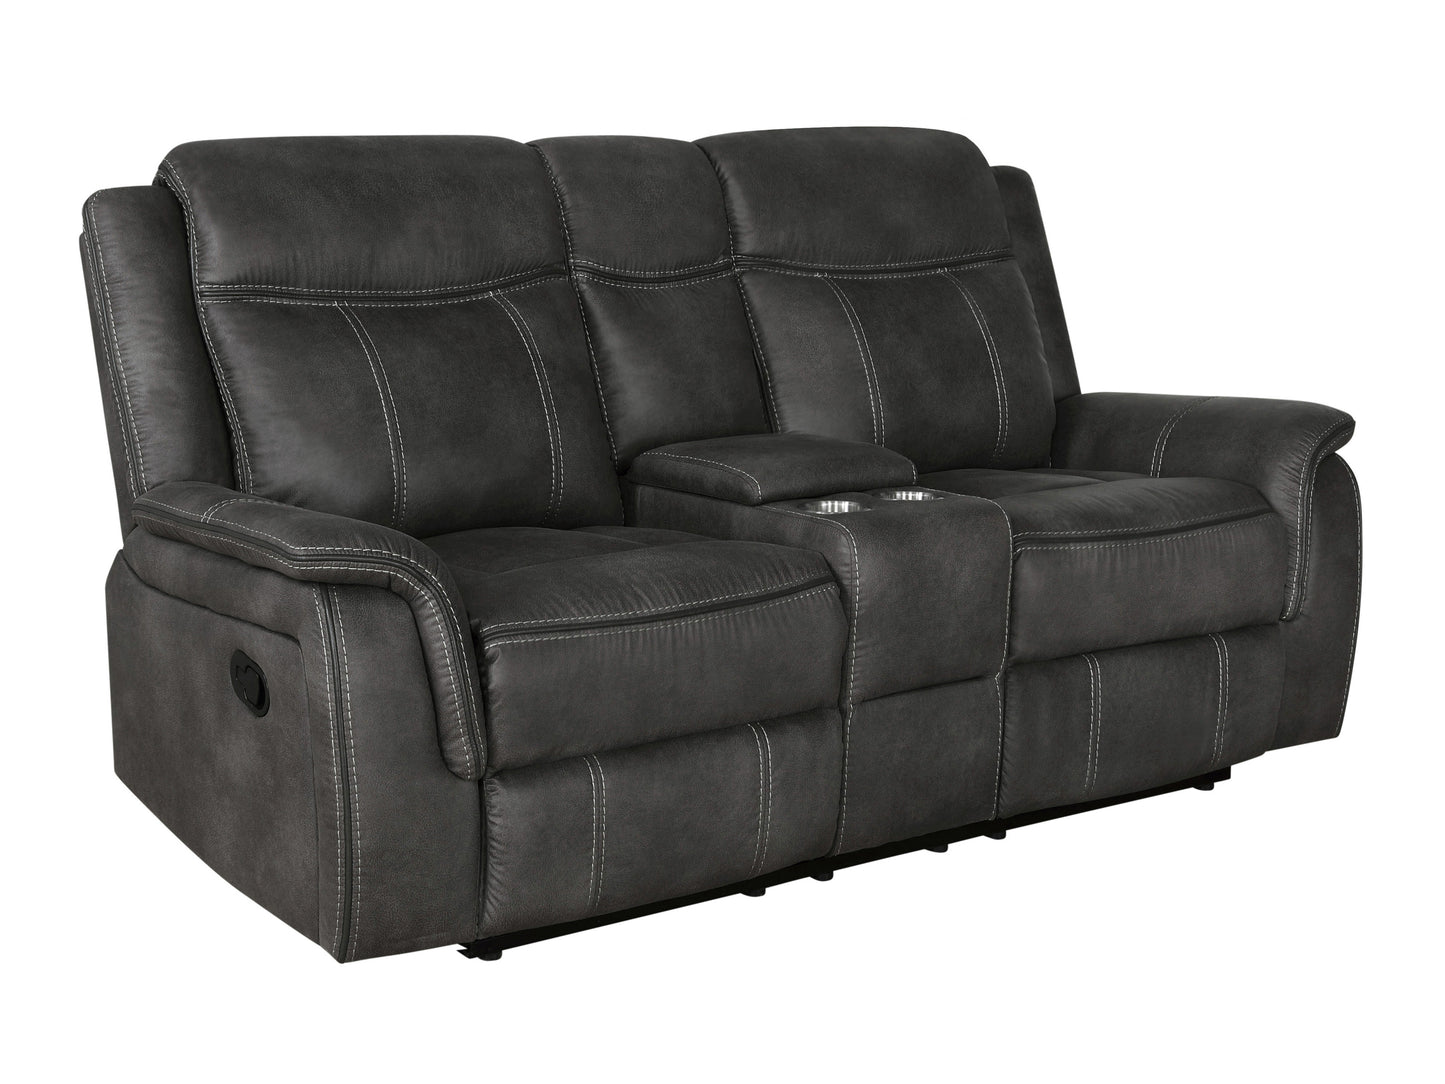 Lawrence Upholstered Tufted Living Room Set - 603504